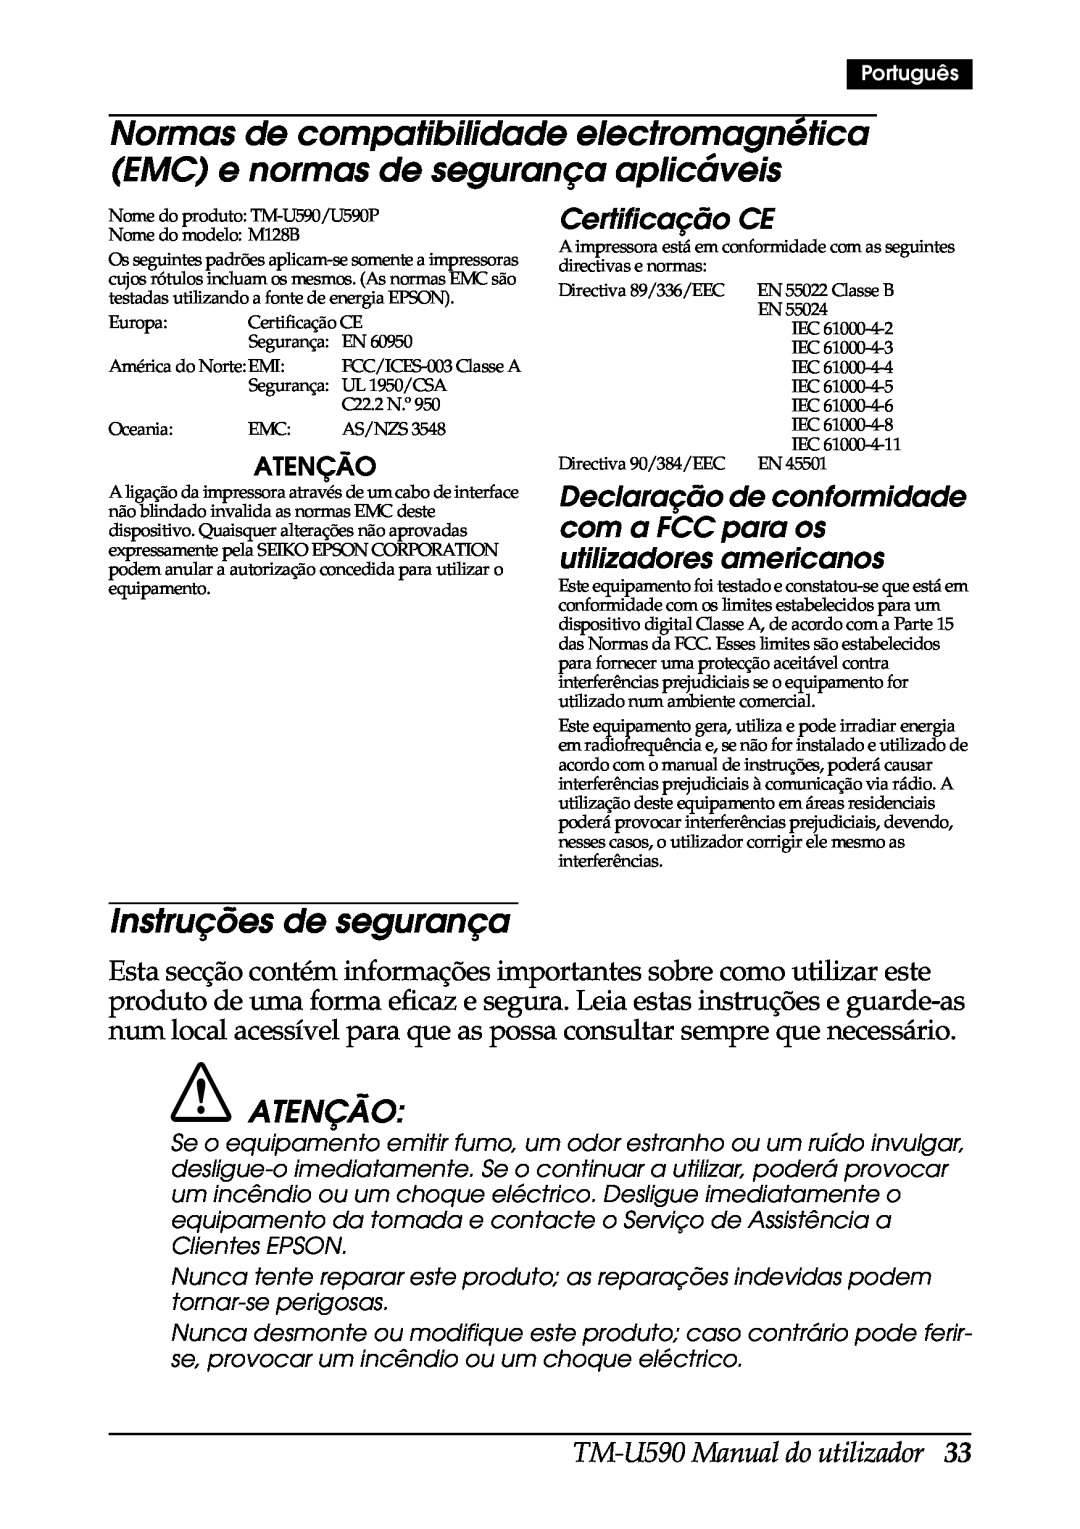 FARGO electronic user manual Instruções de segurança, Atenção, Certificação CE, TM-U590 Manual do utilizador 